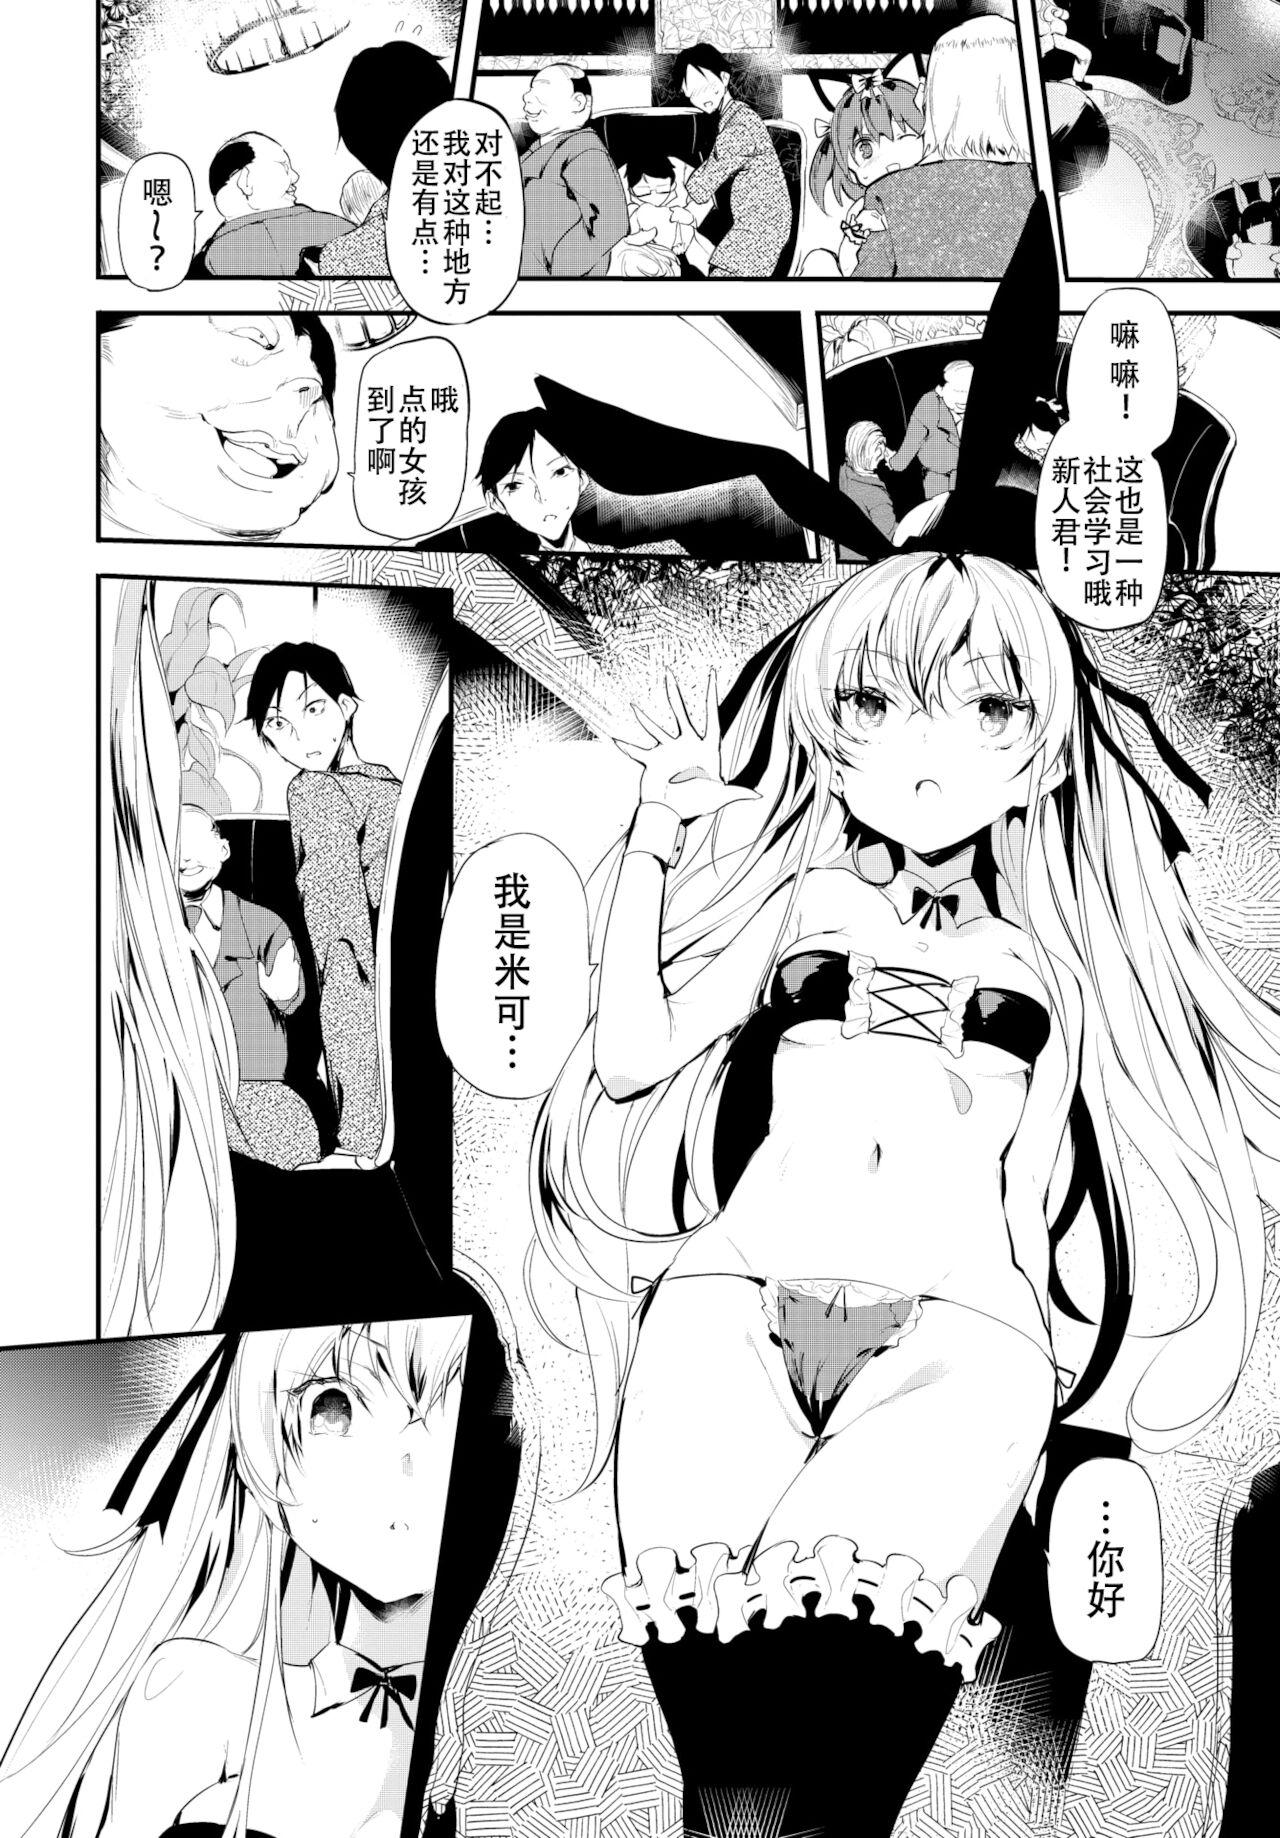 Bisexual Reitaisai 10 Repo Manga Tied - Page 8